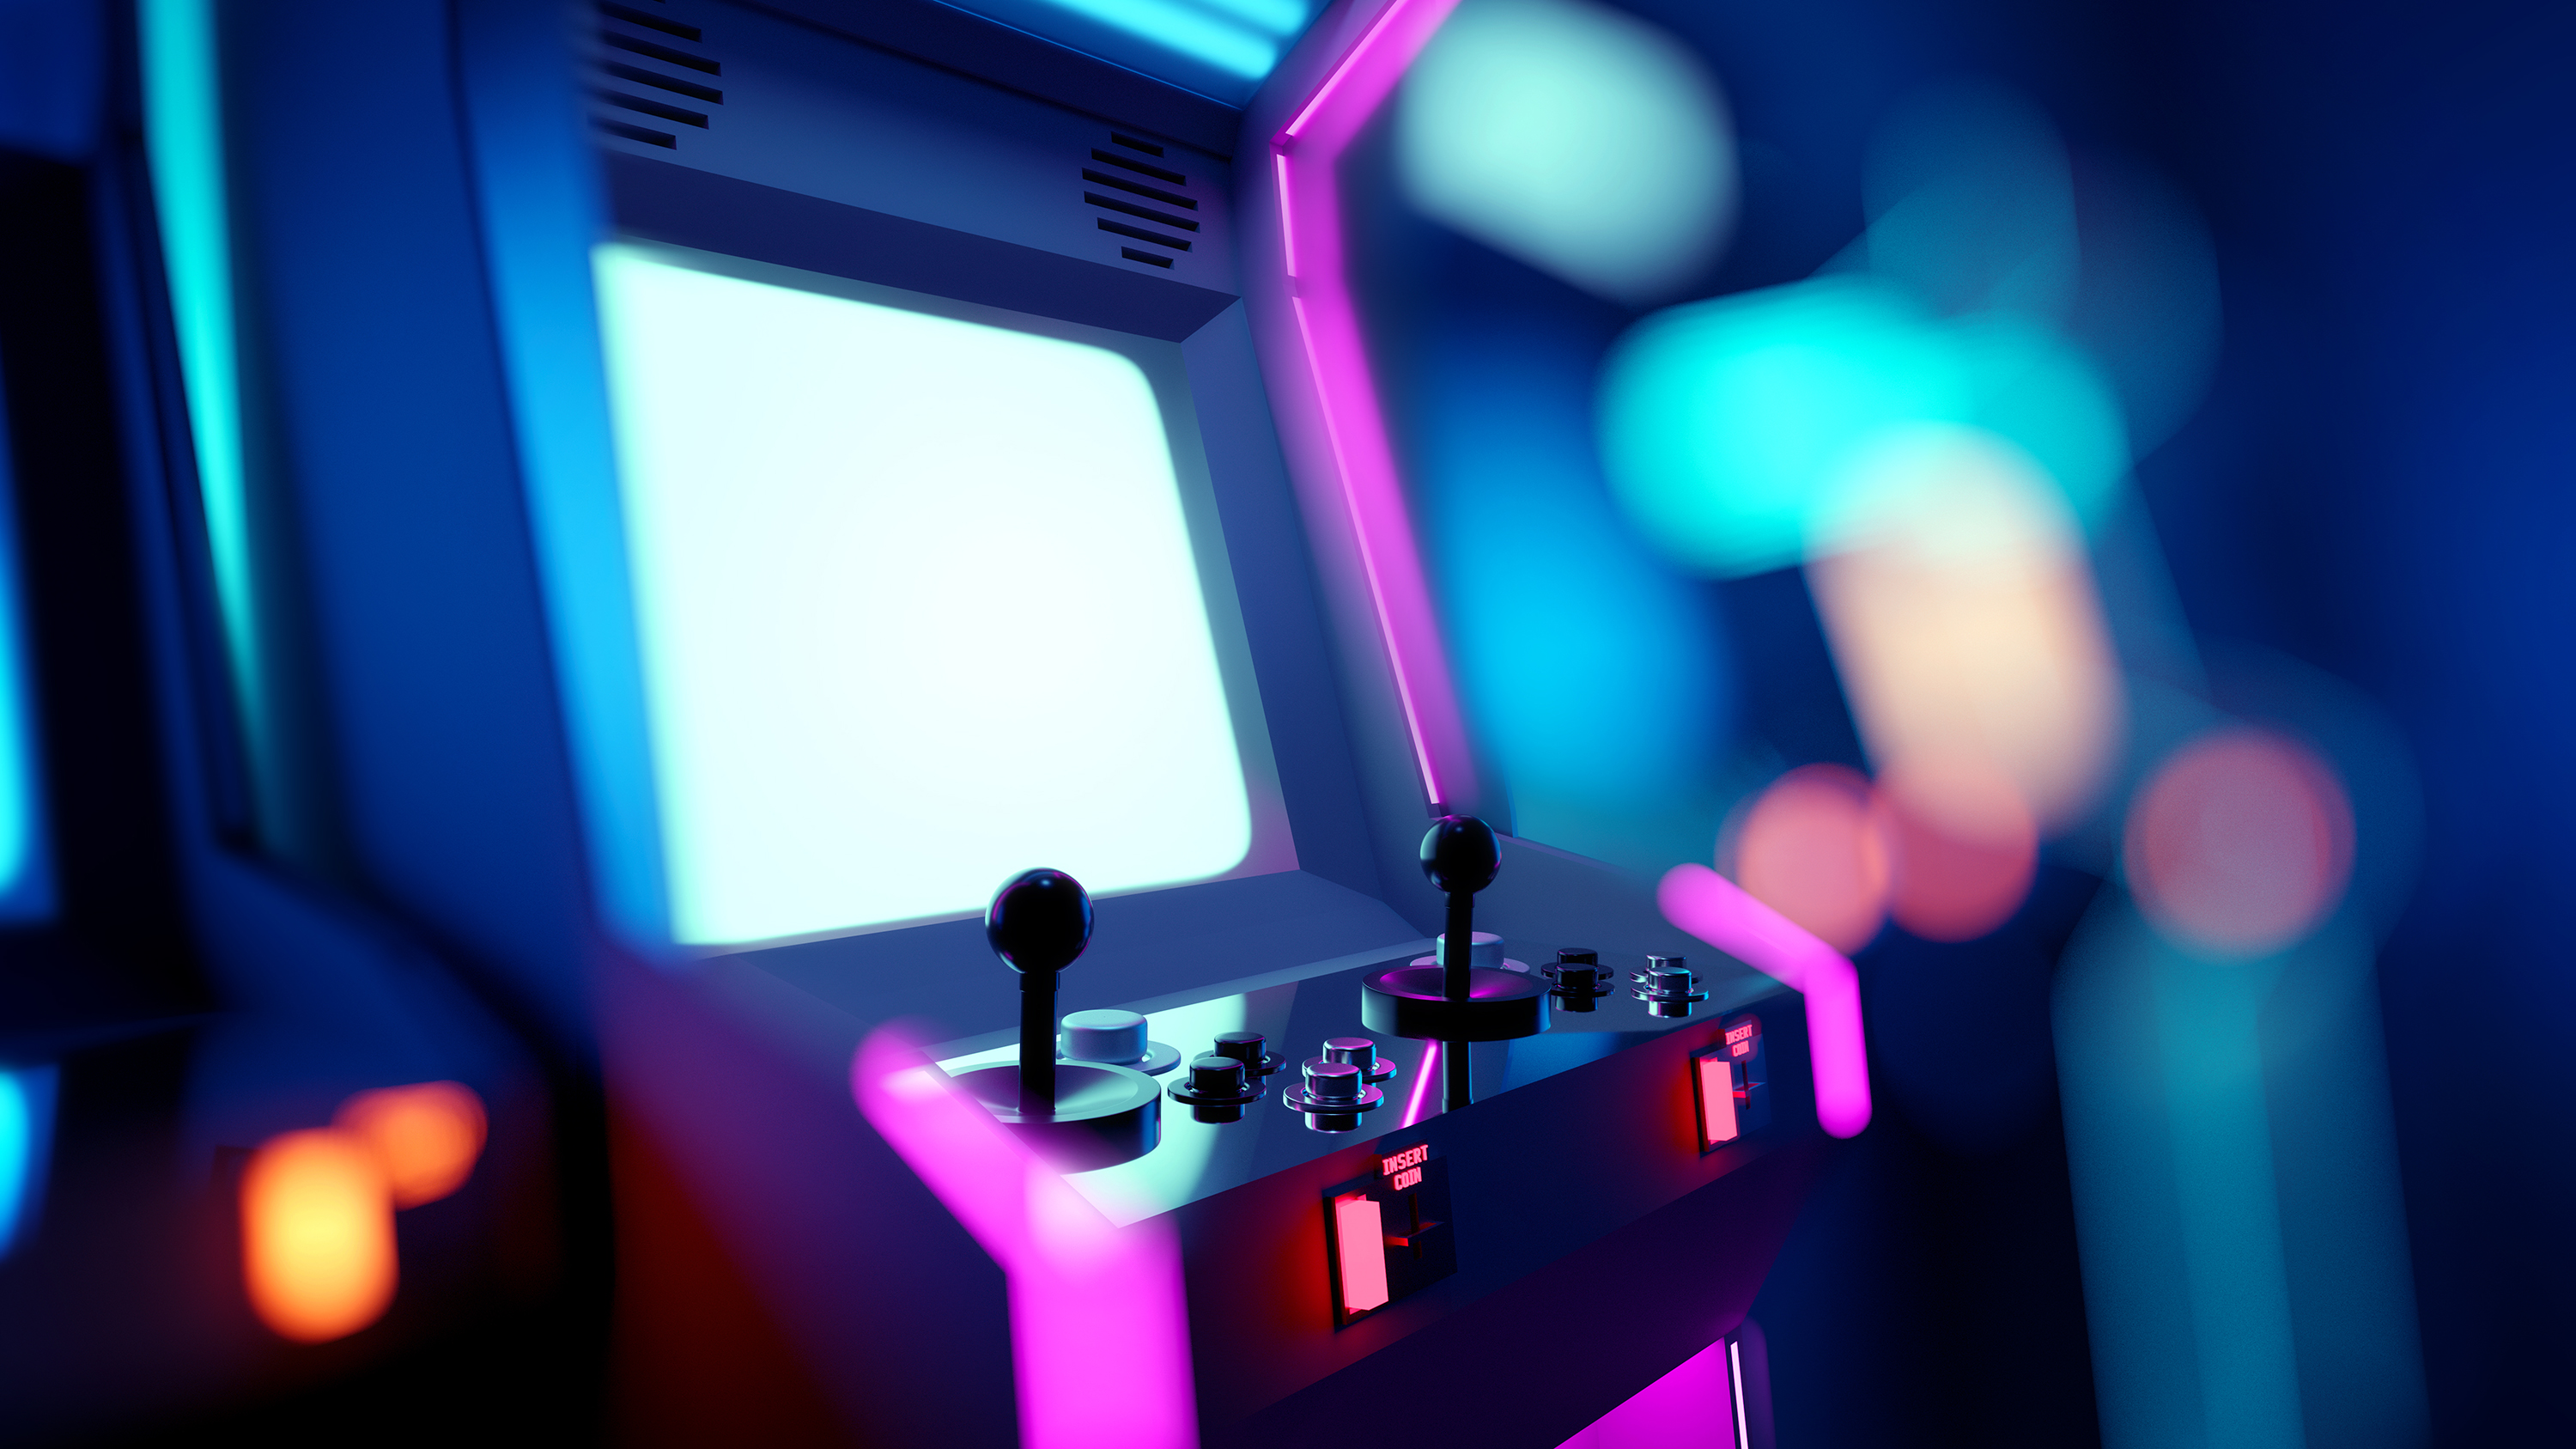 A neon-lit arcade machine